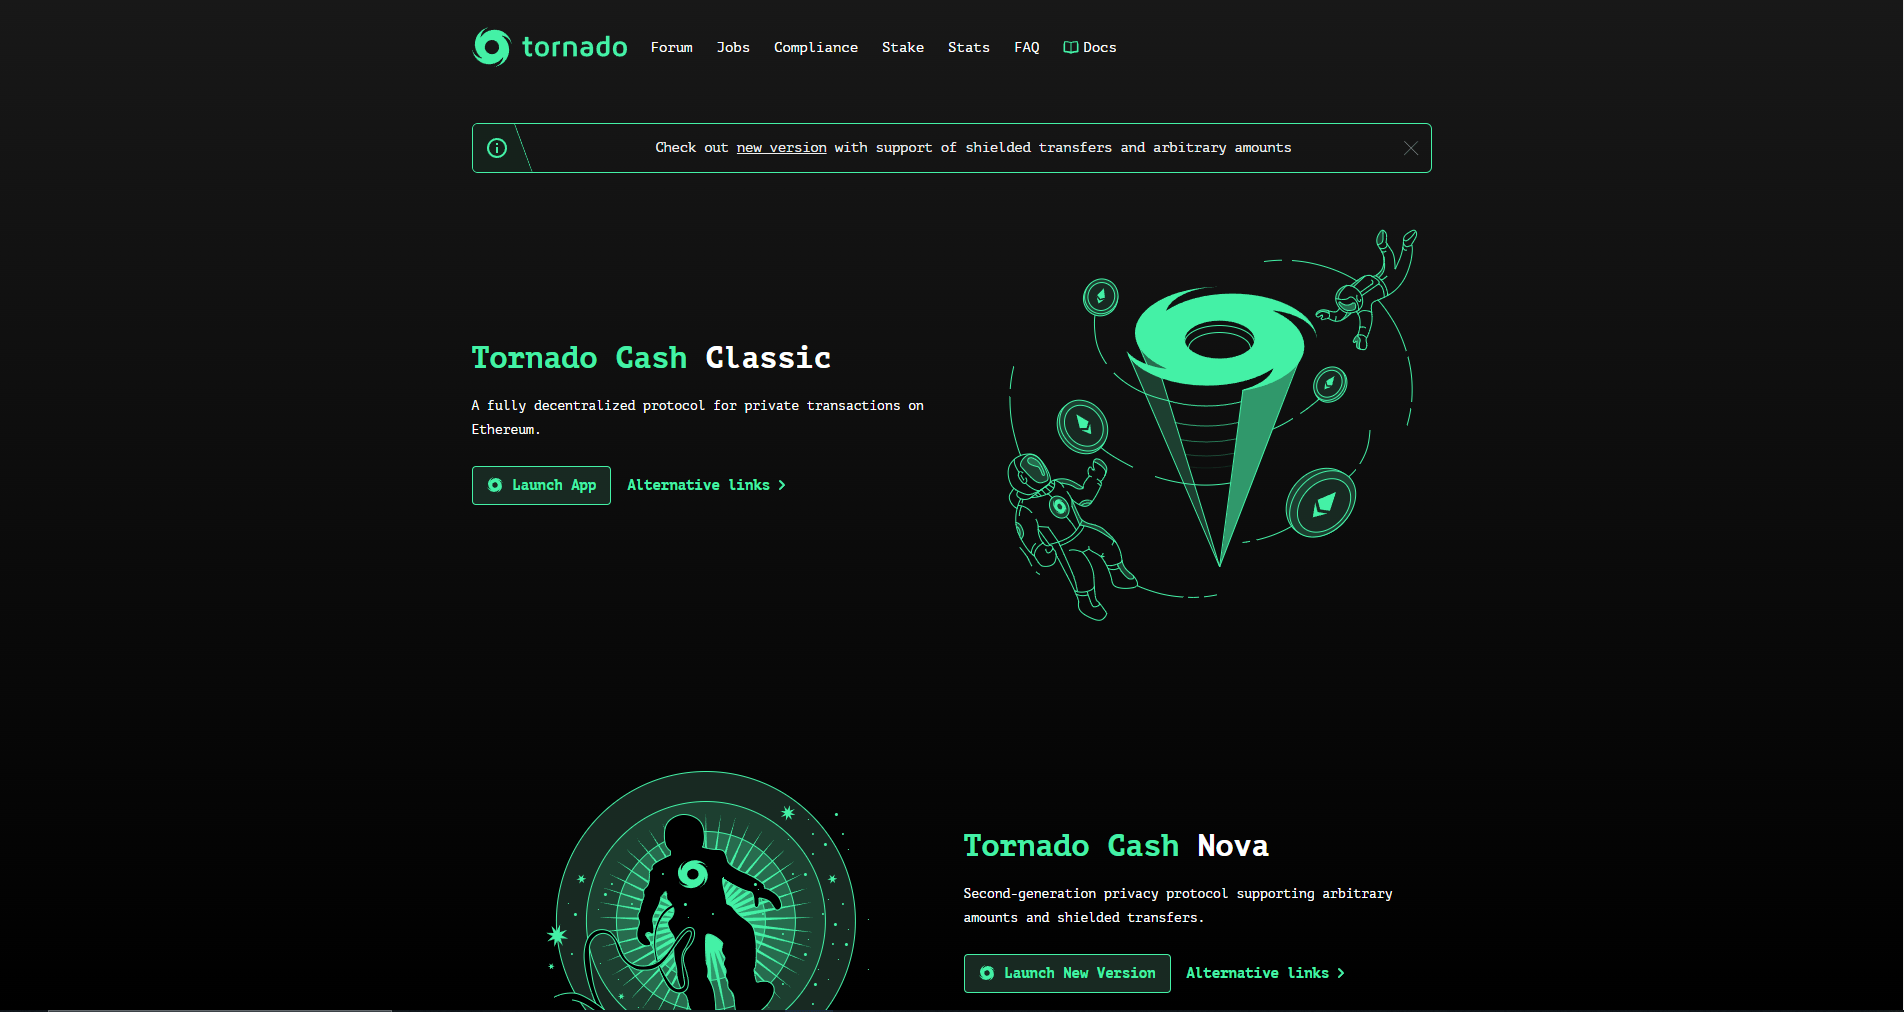 Tornado Cash est un protocole décentralisé qui permet d'anonymiser les transactions sur Ethereum